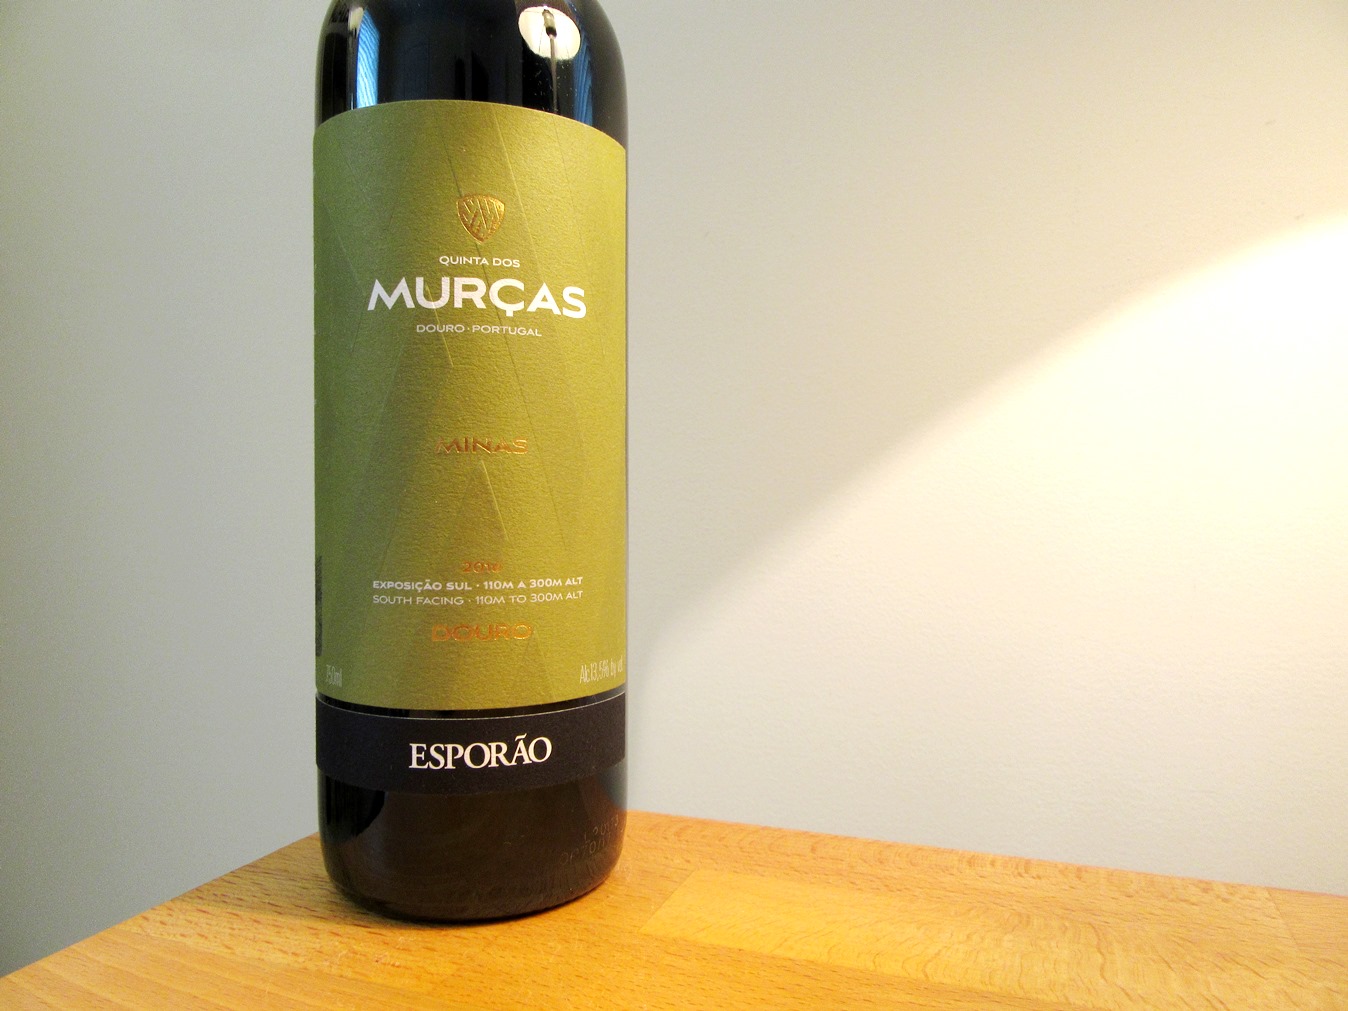 Esporao, Quinta Dos Murcas Minas 2016, Douro, Portugal, Wine Casual